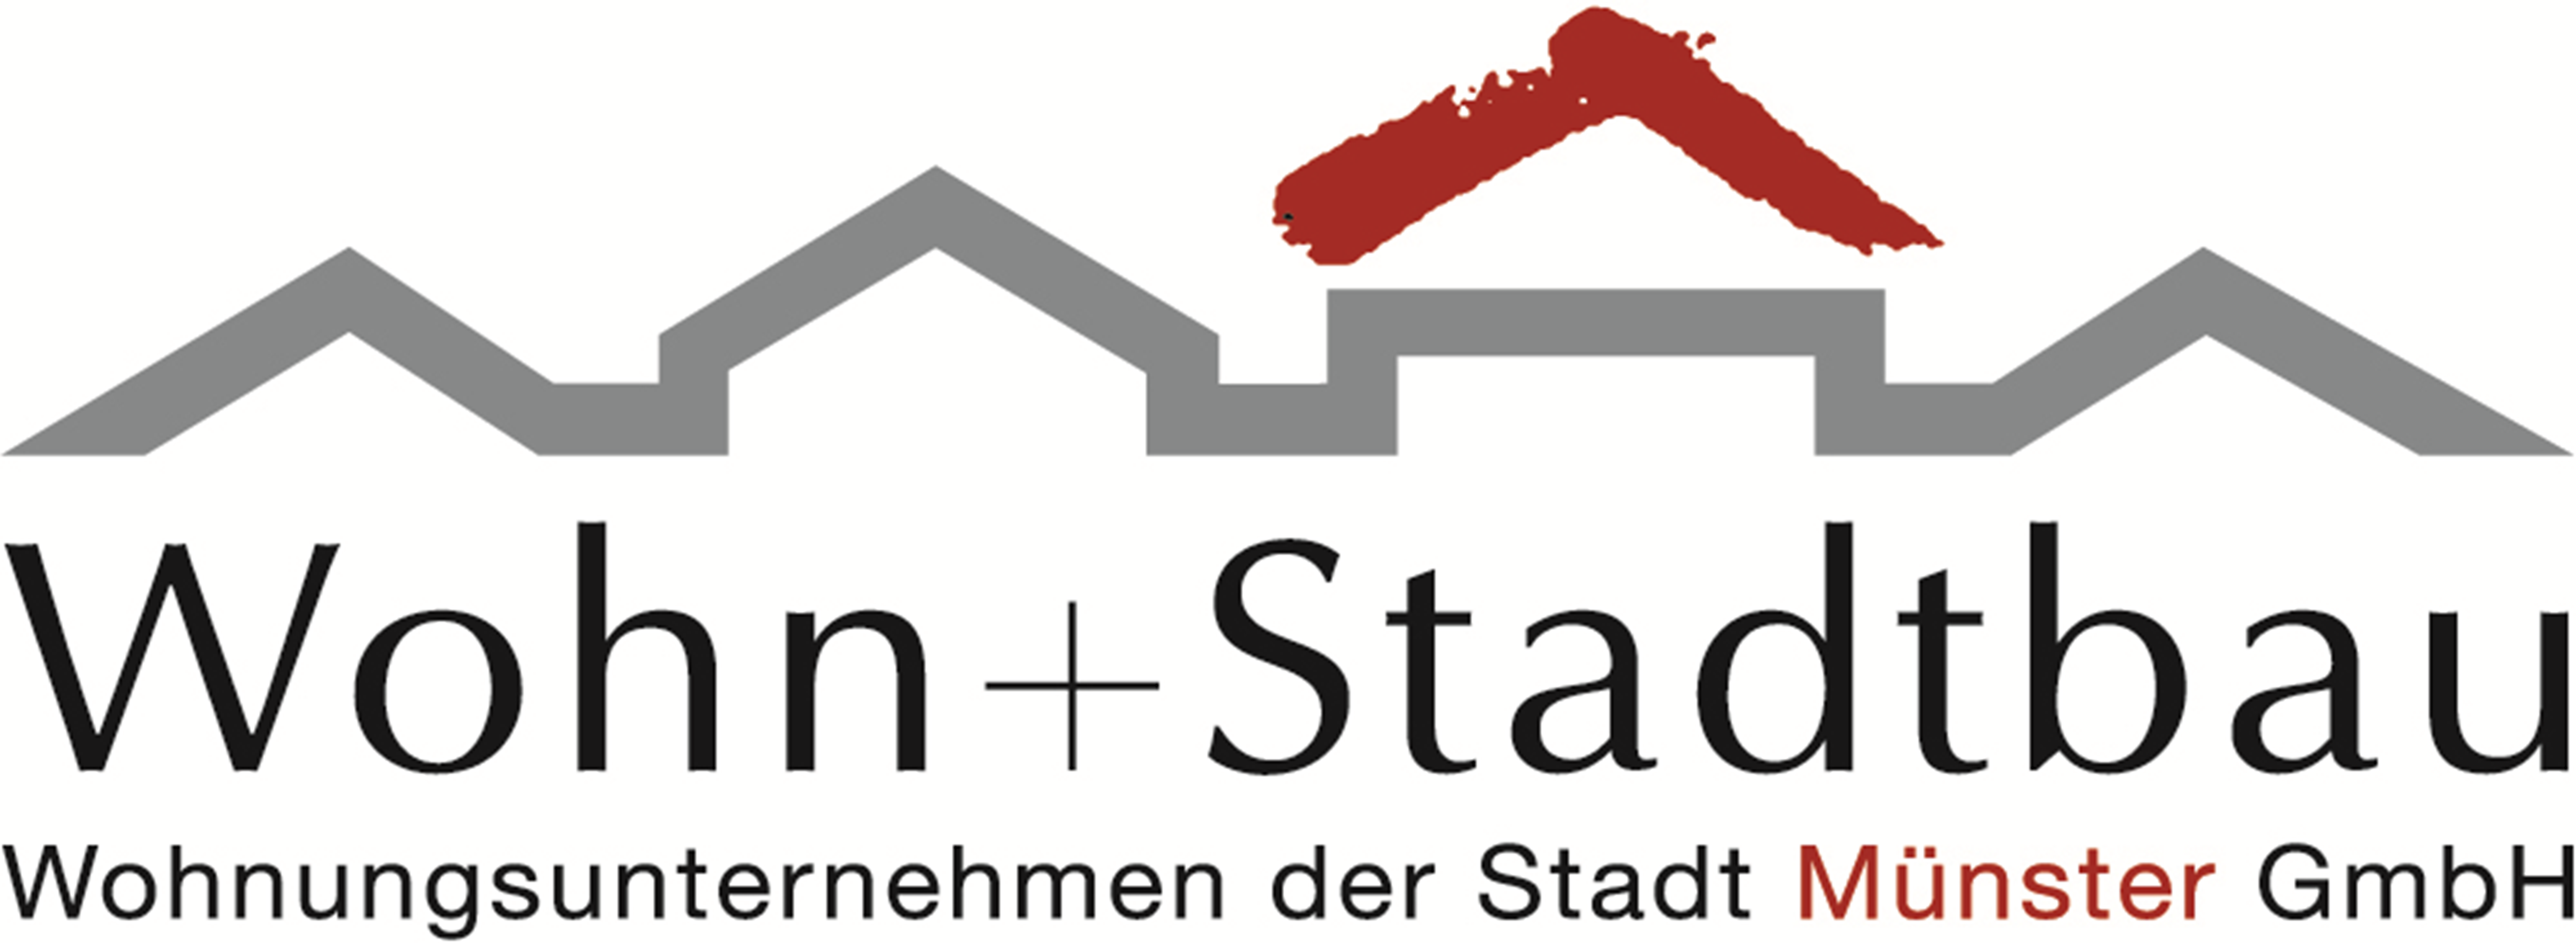 Wohn Stadtbau Wohnungsunternehmen der Stadt Muenster GmbH